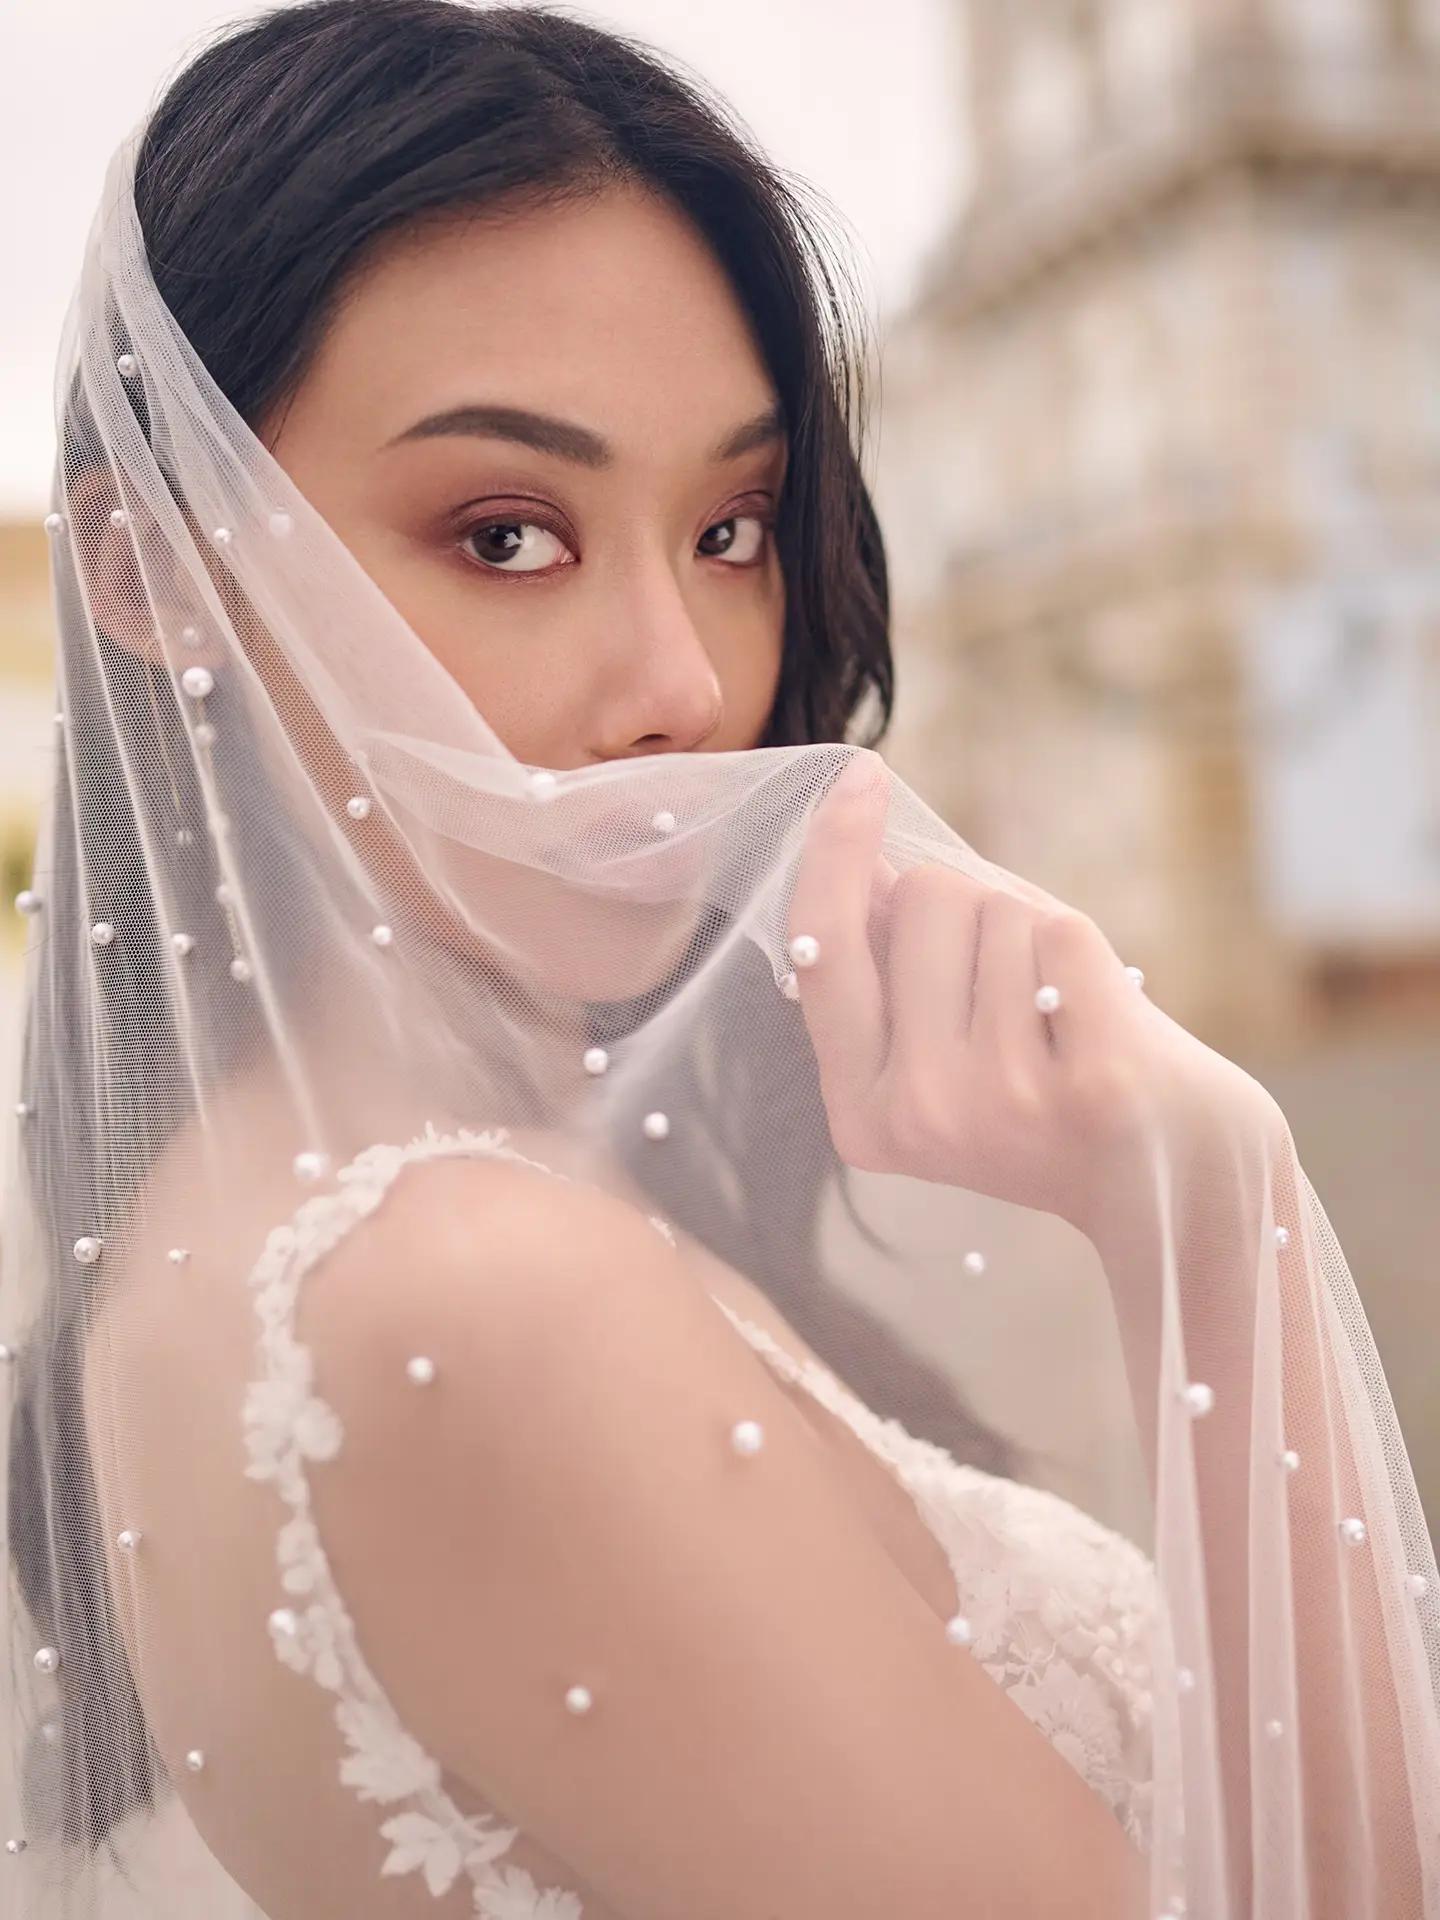 How do I match my veil to my wedding dress? Image